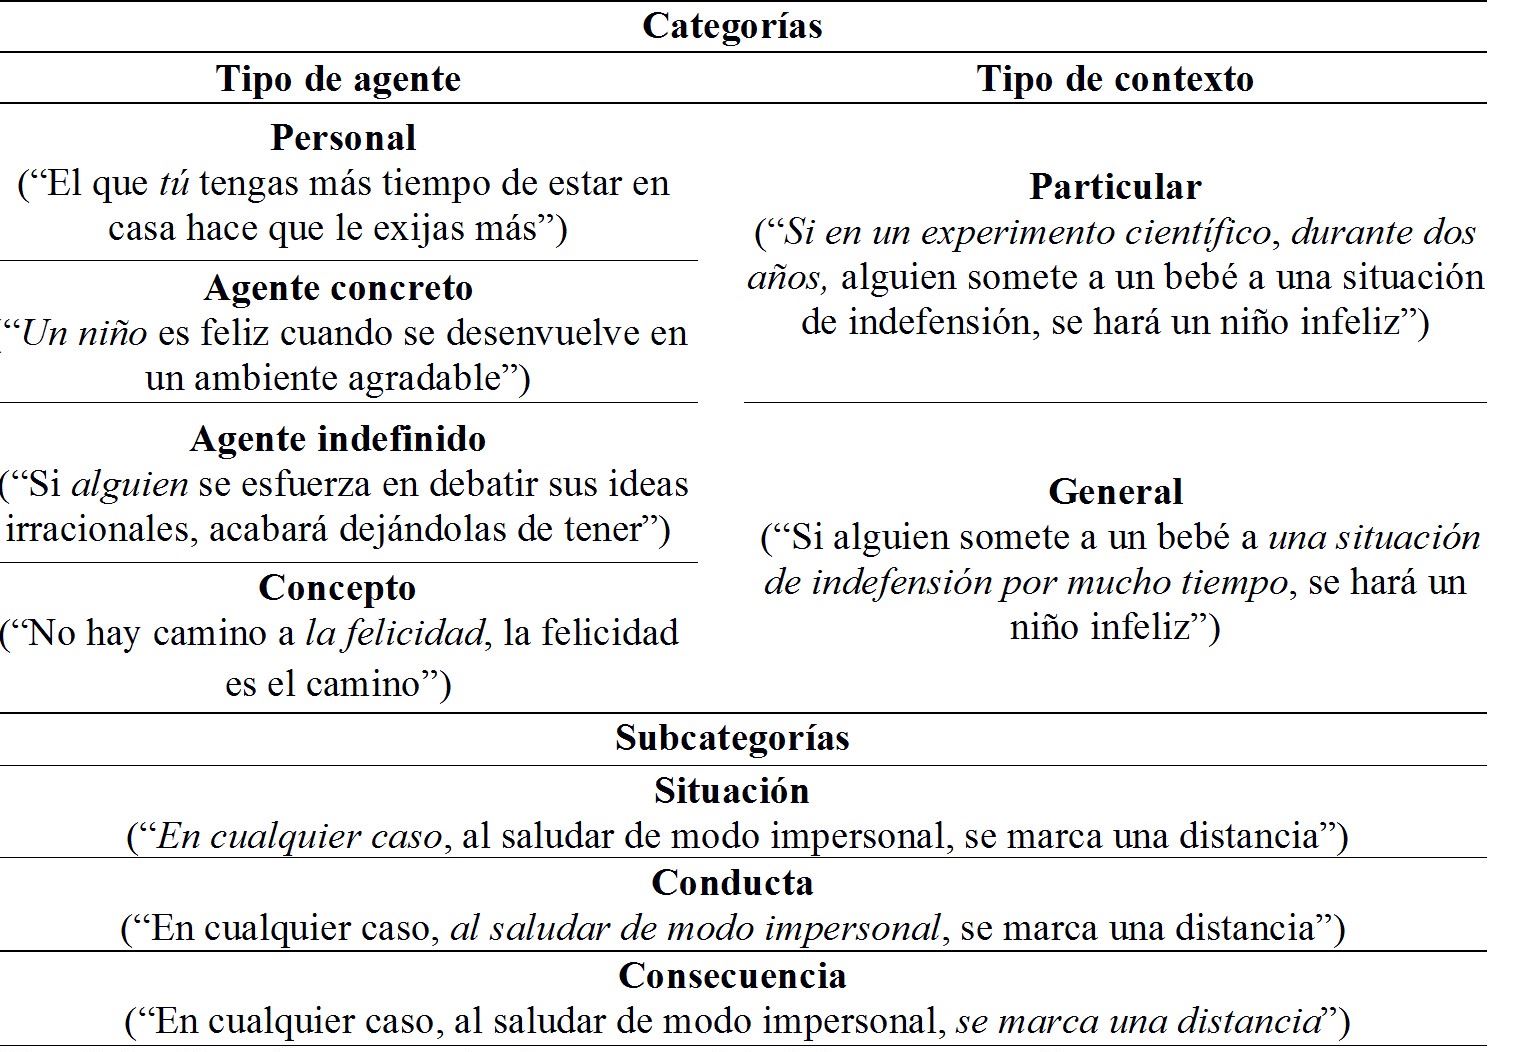 
Sistema de
categorización de reglas en las verbalizaciones de la terapeuta y ejemplos
